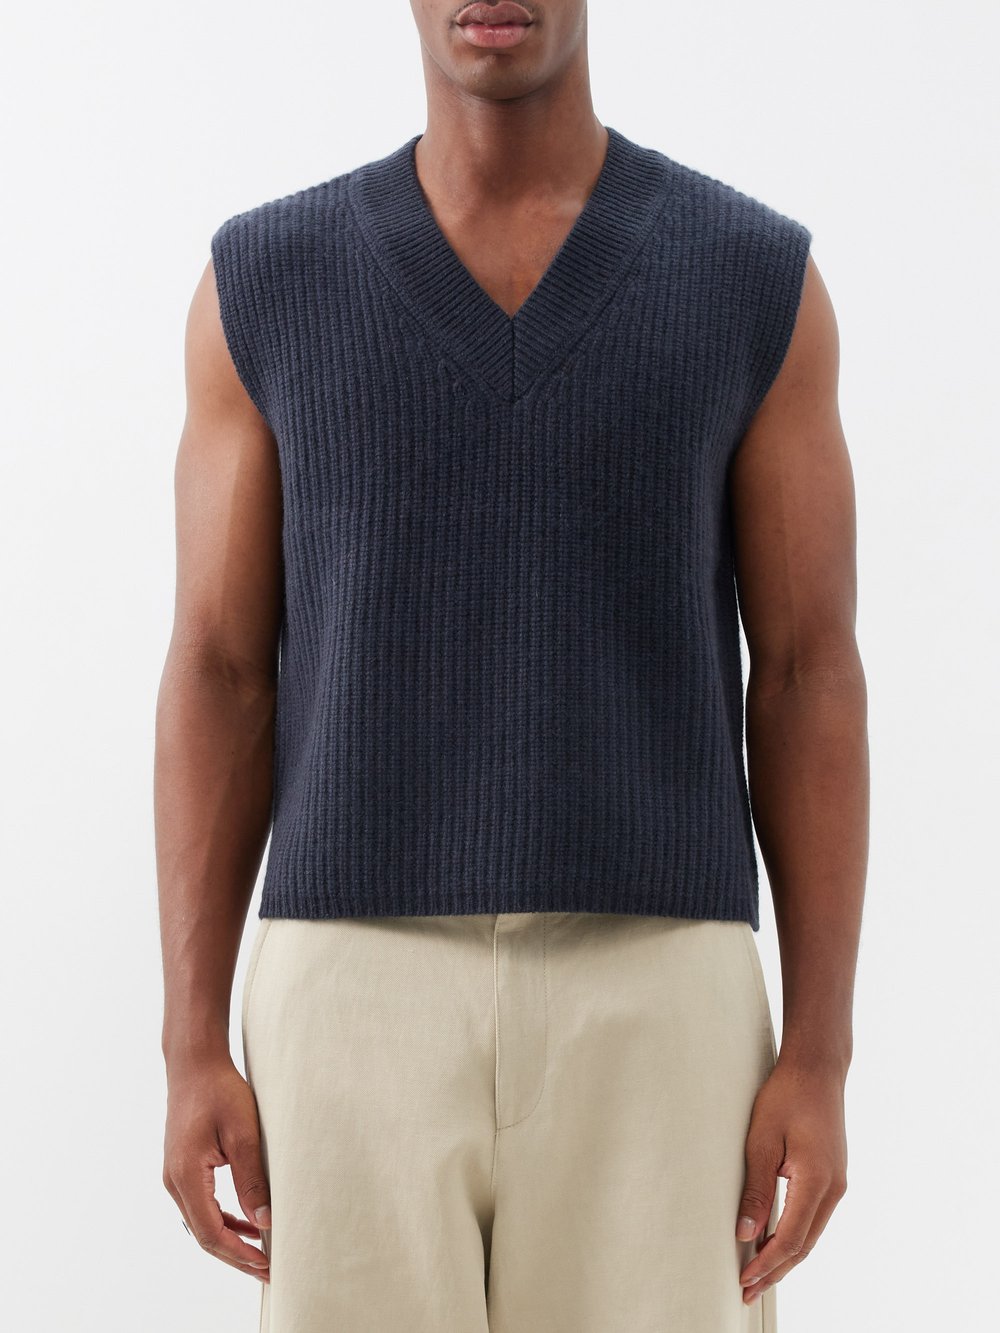 Кашемировый свитер-жилет mr southbank Arch4, серый цена и фото